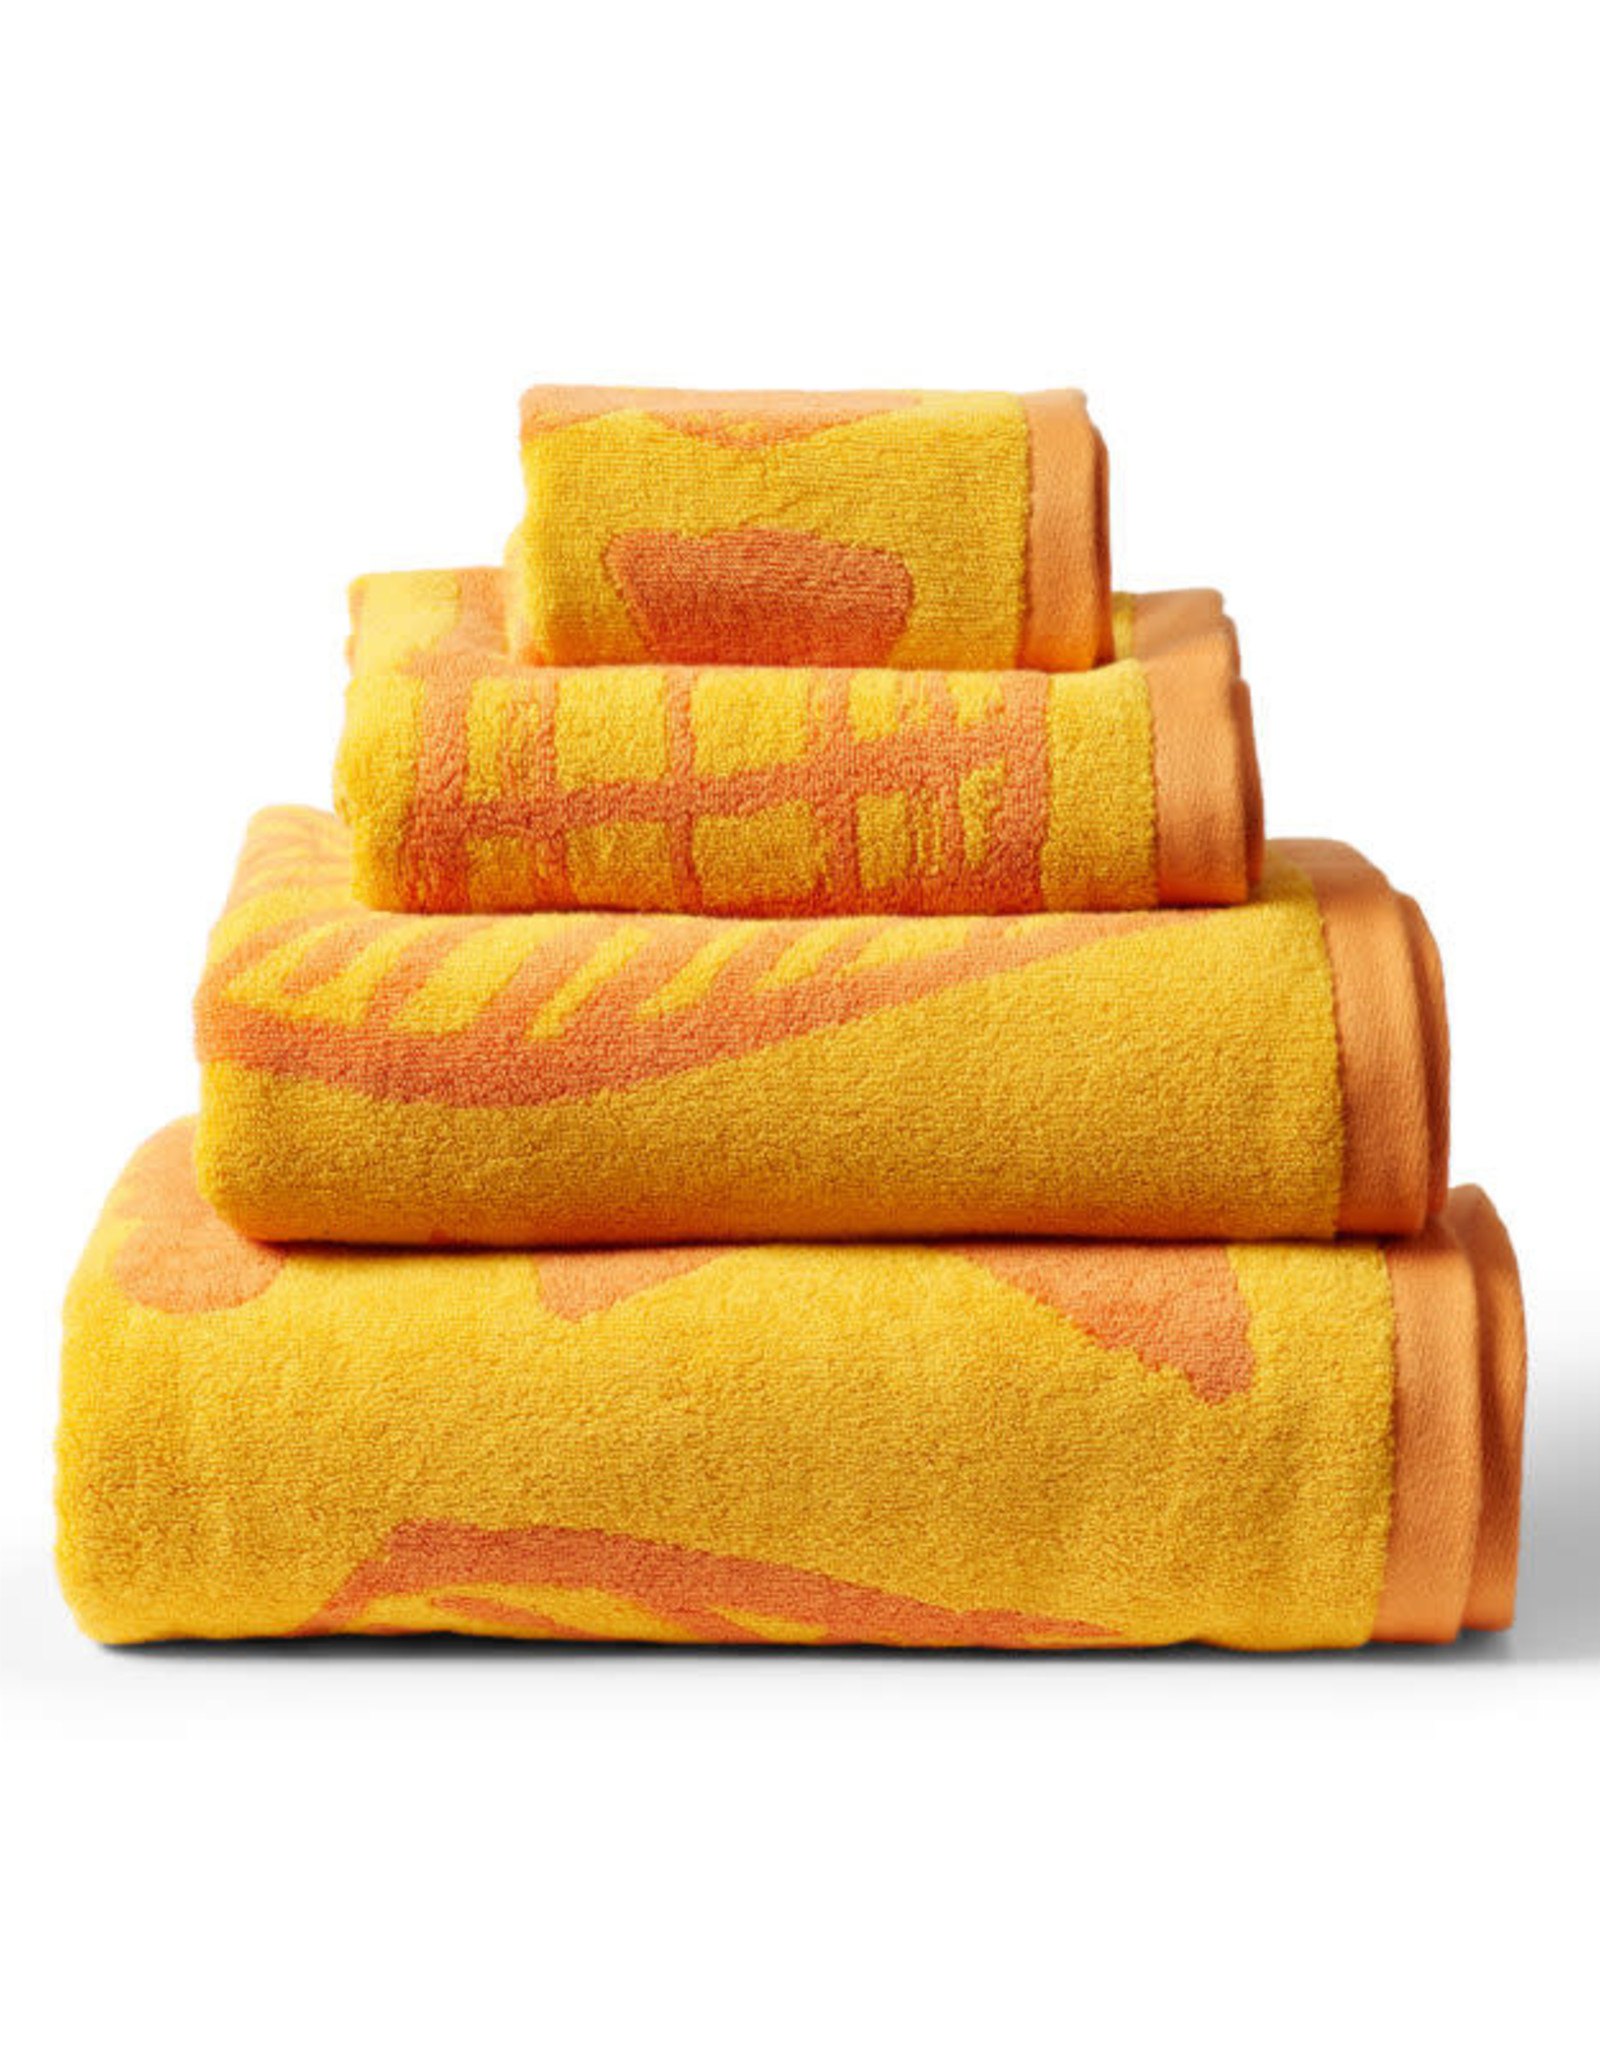 Donna Wilson - EU Made Cotton Bath Towel - Marmalade